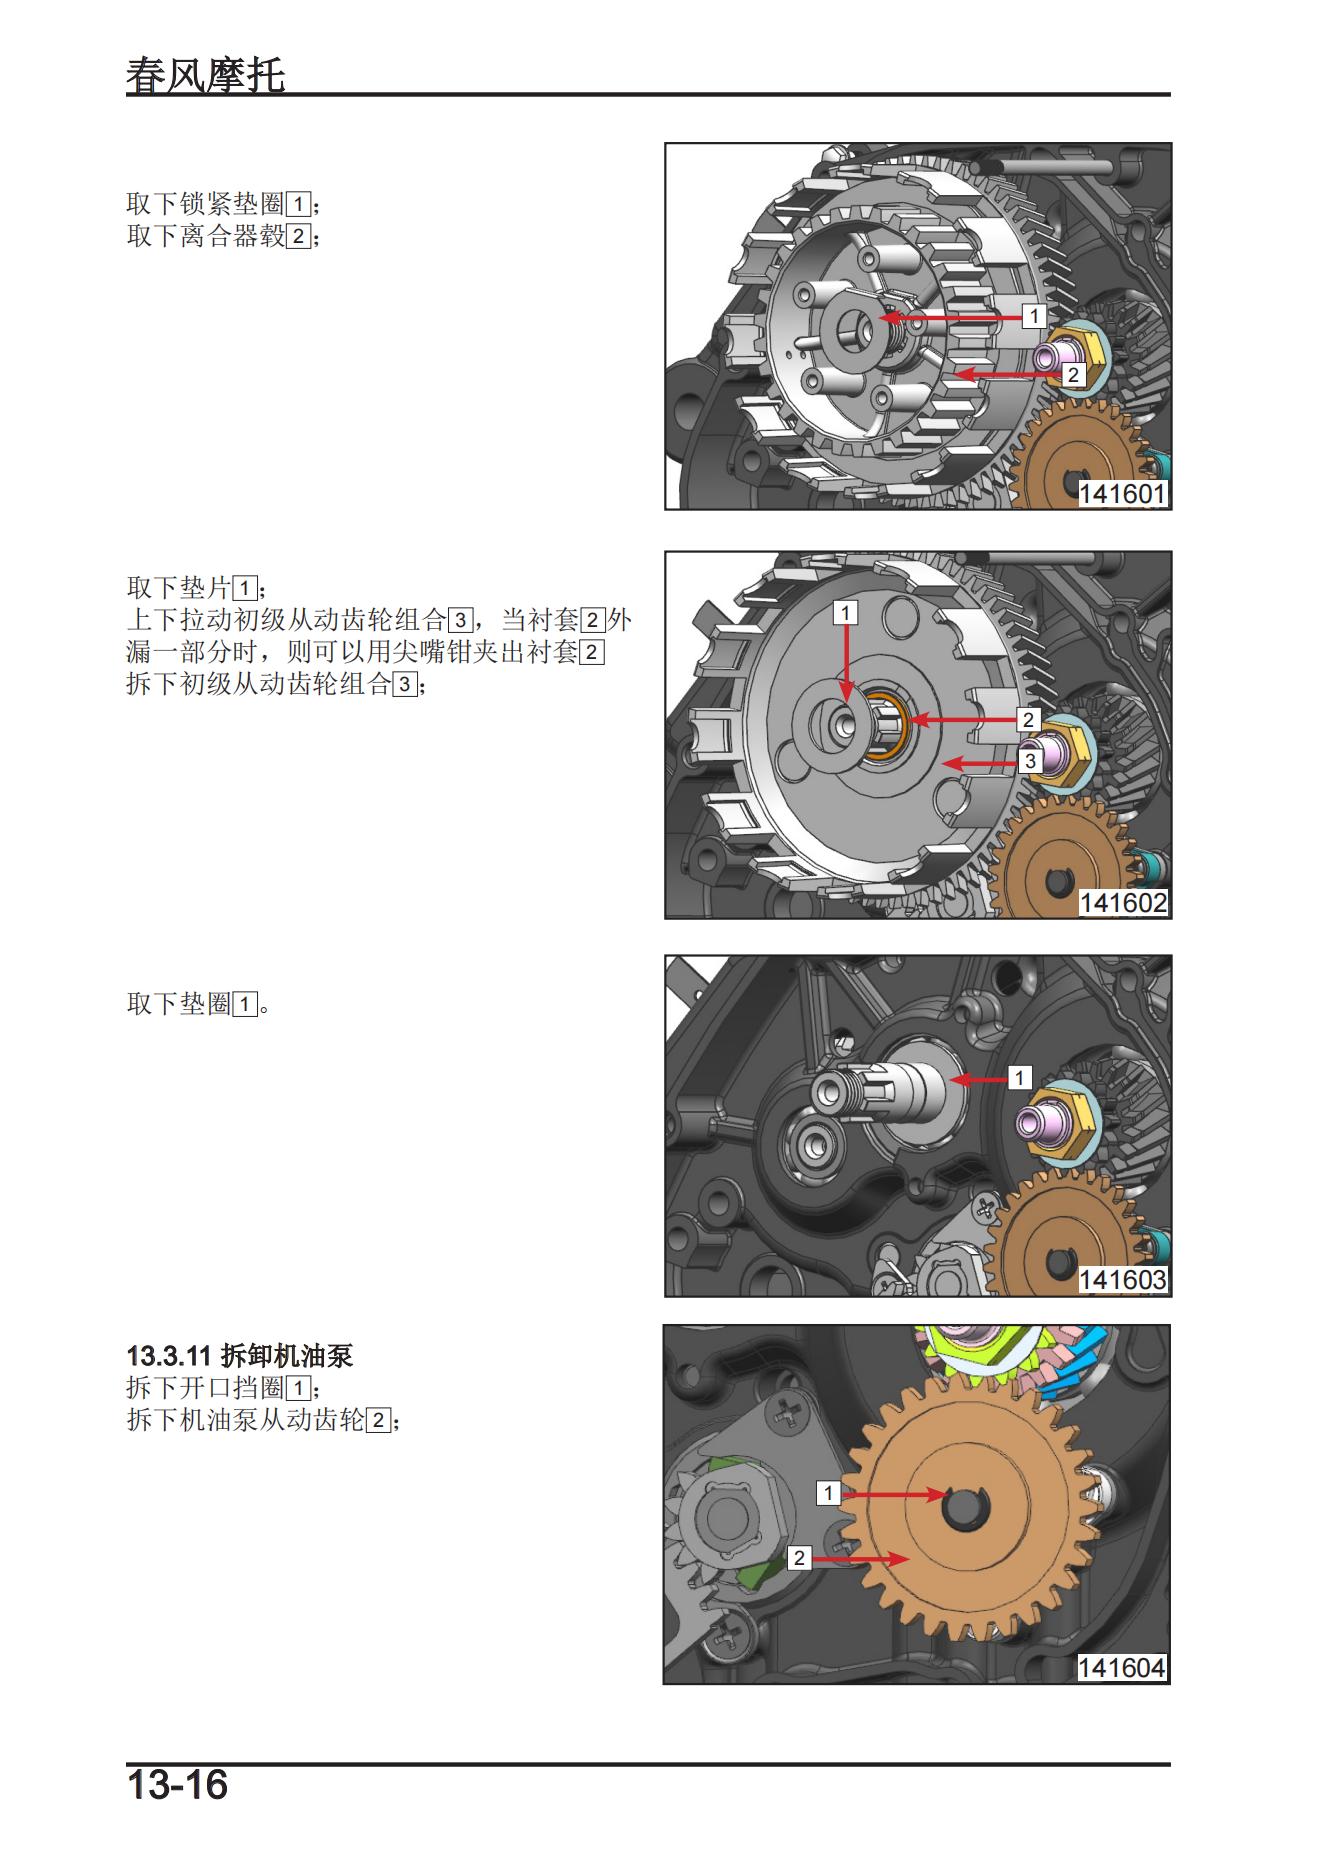 中文原版国四2020-2022春风150NKcfmoto维修手册nk150插图4